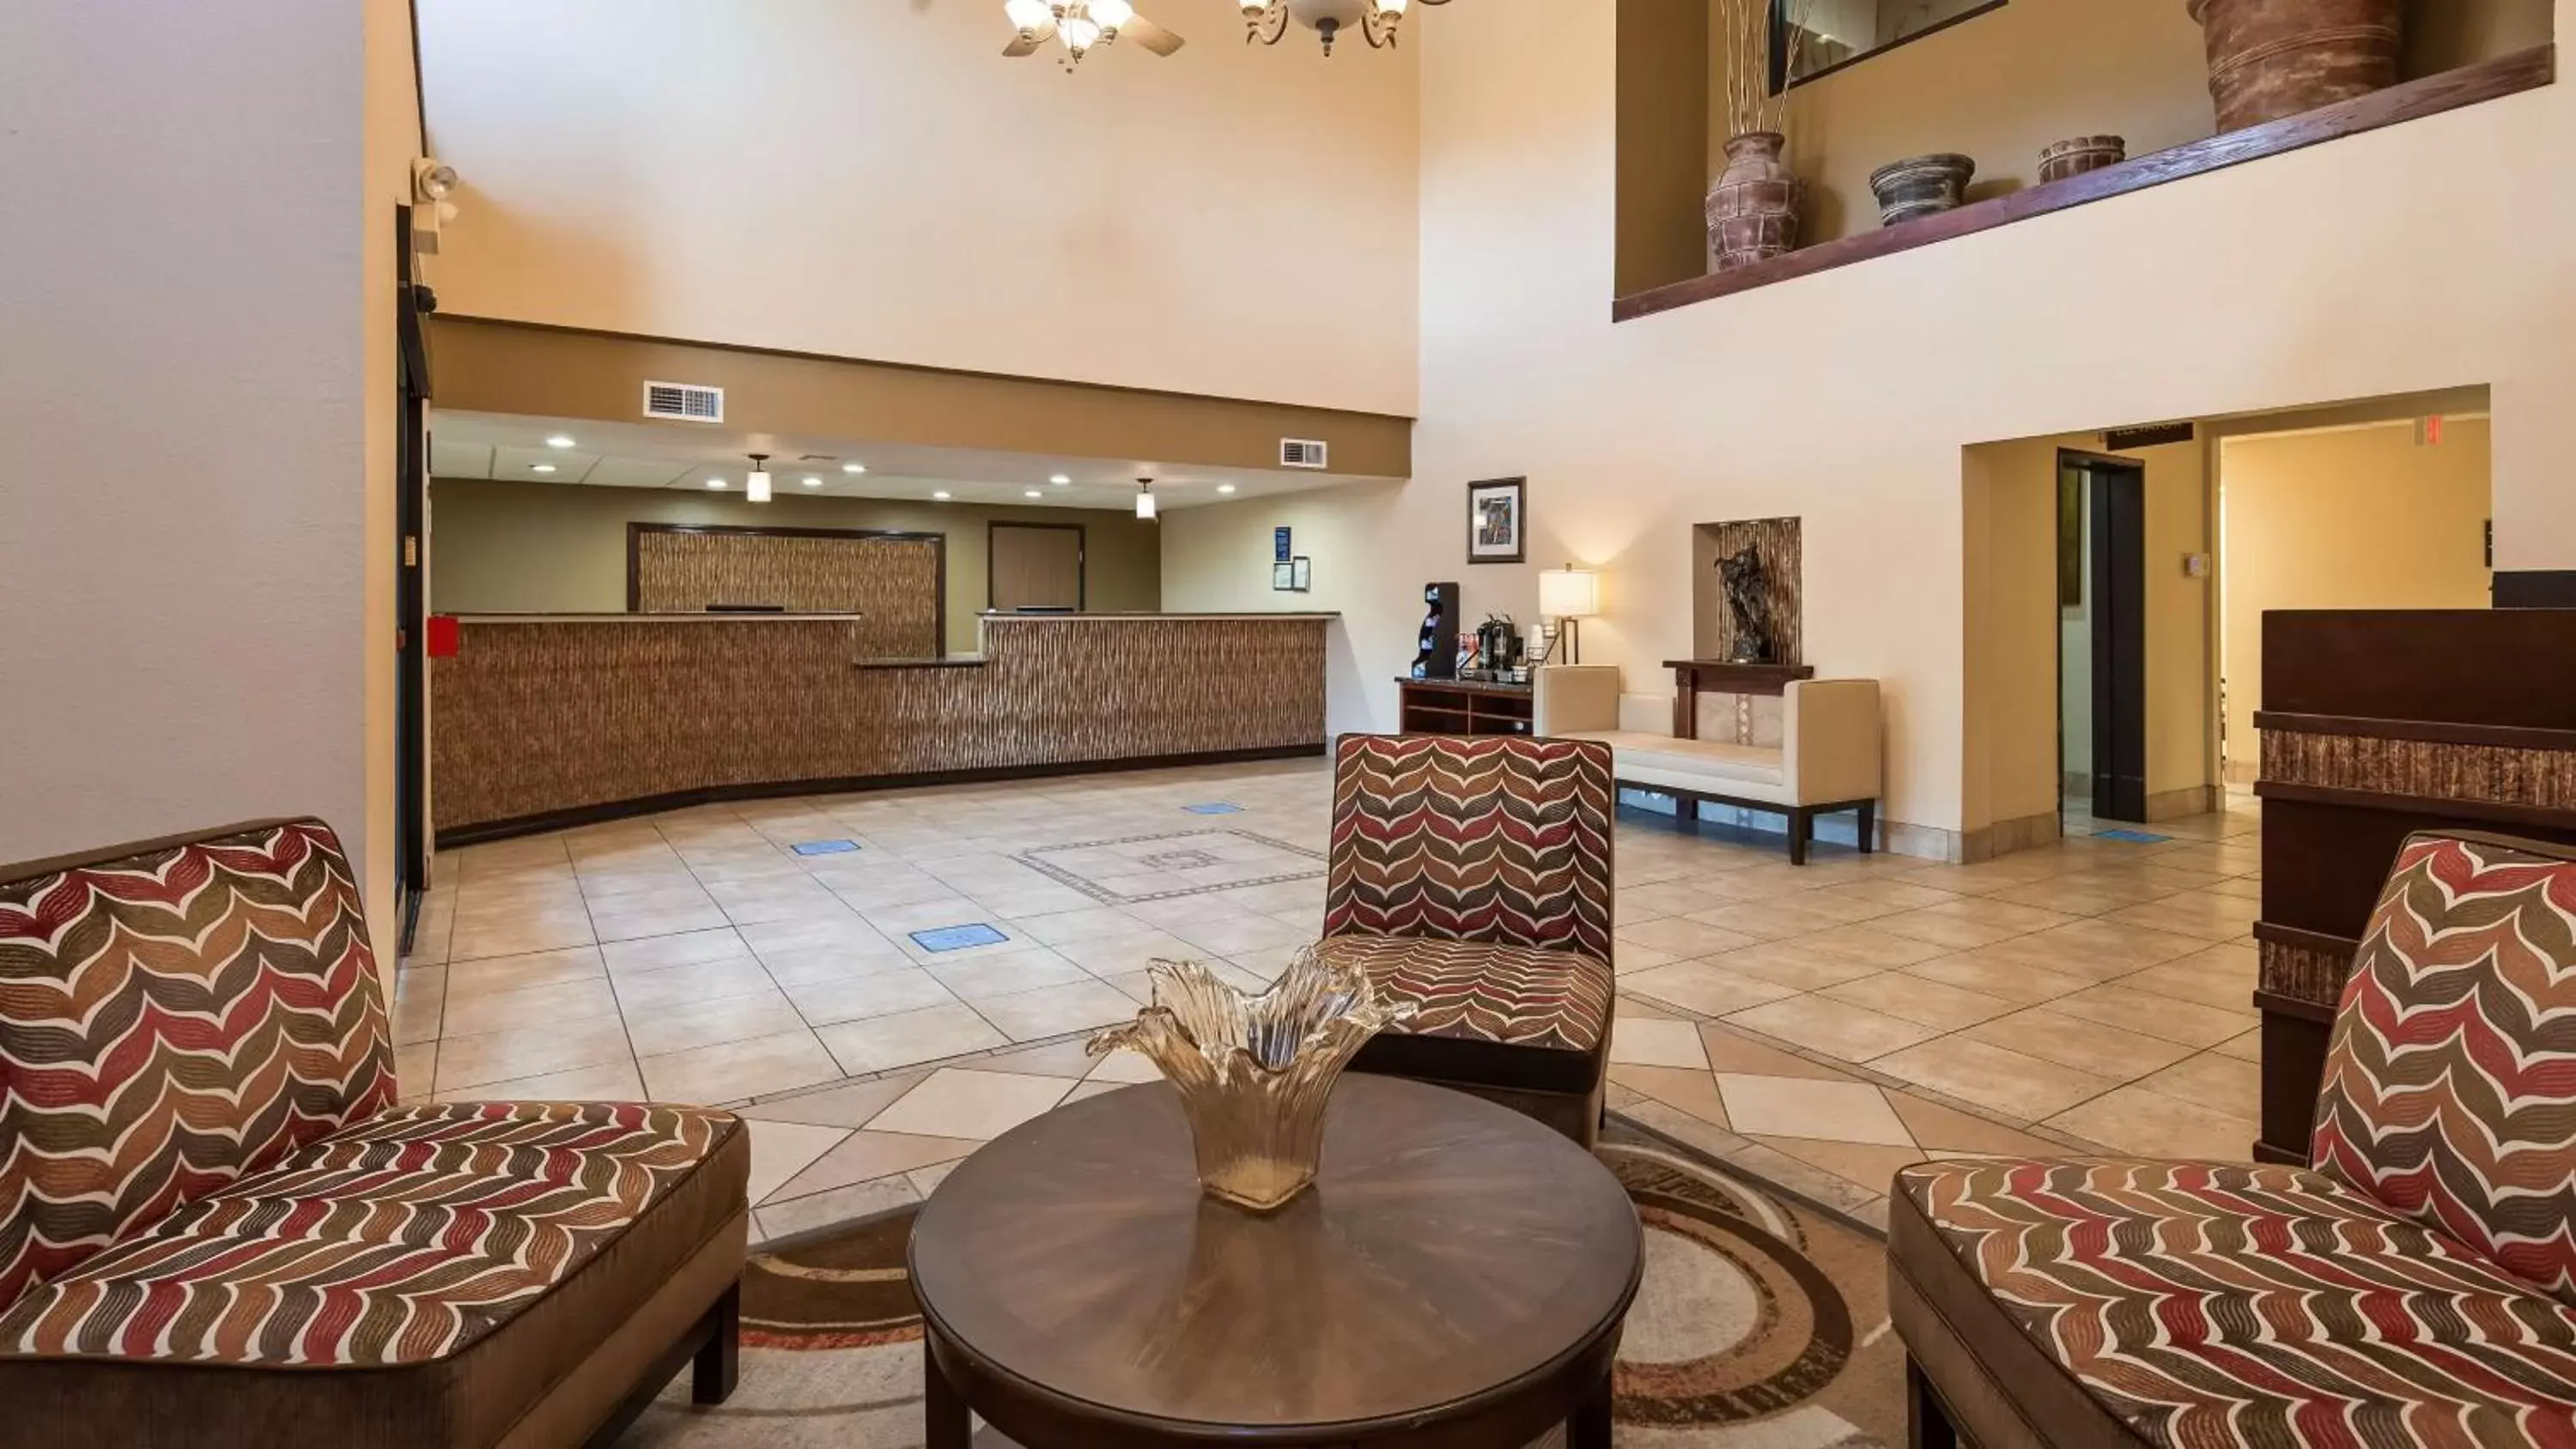 Lobby or reception, Lobby/Reception in Best Western Plus Ruidoso Inn